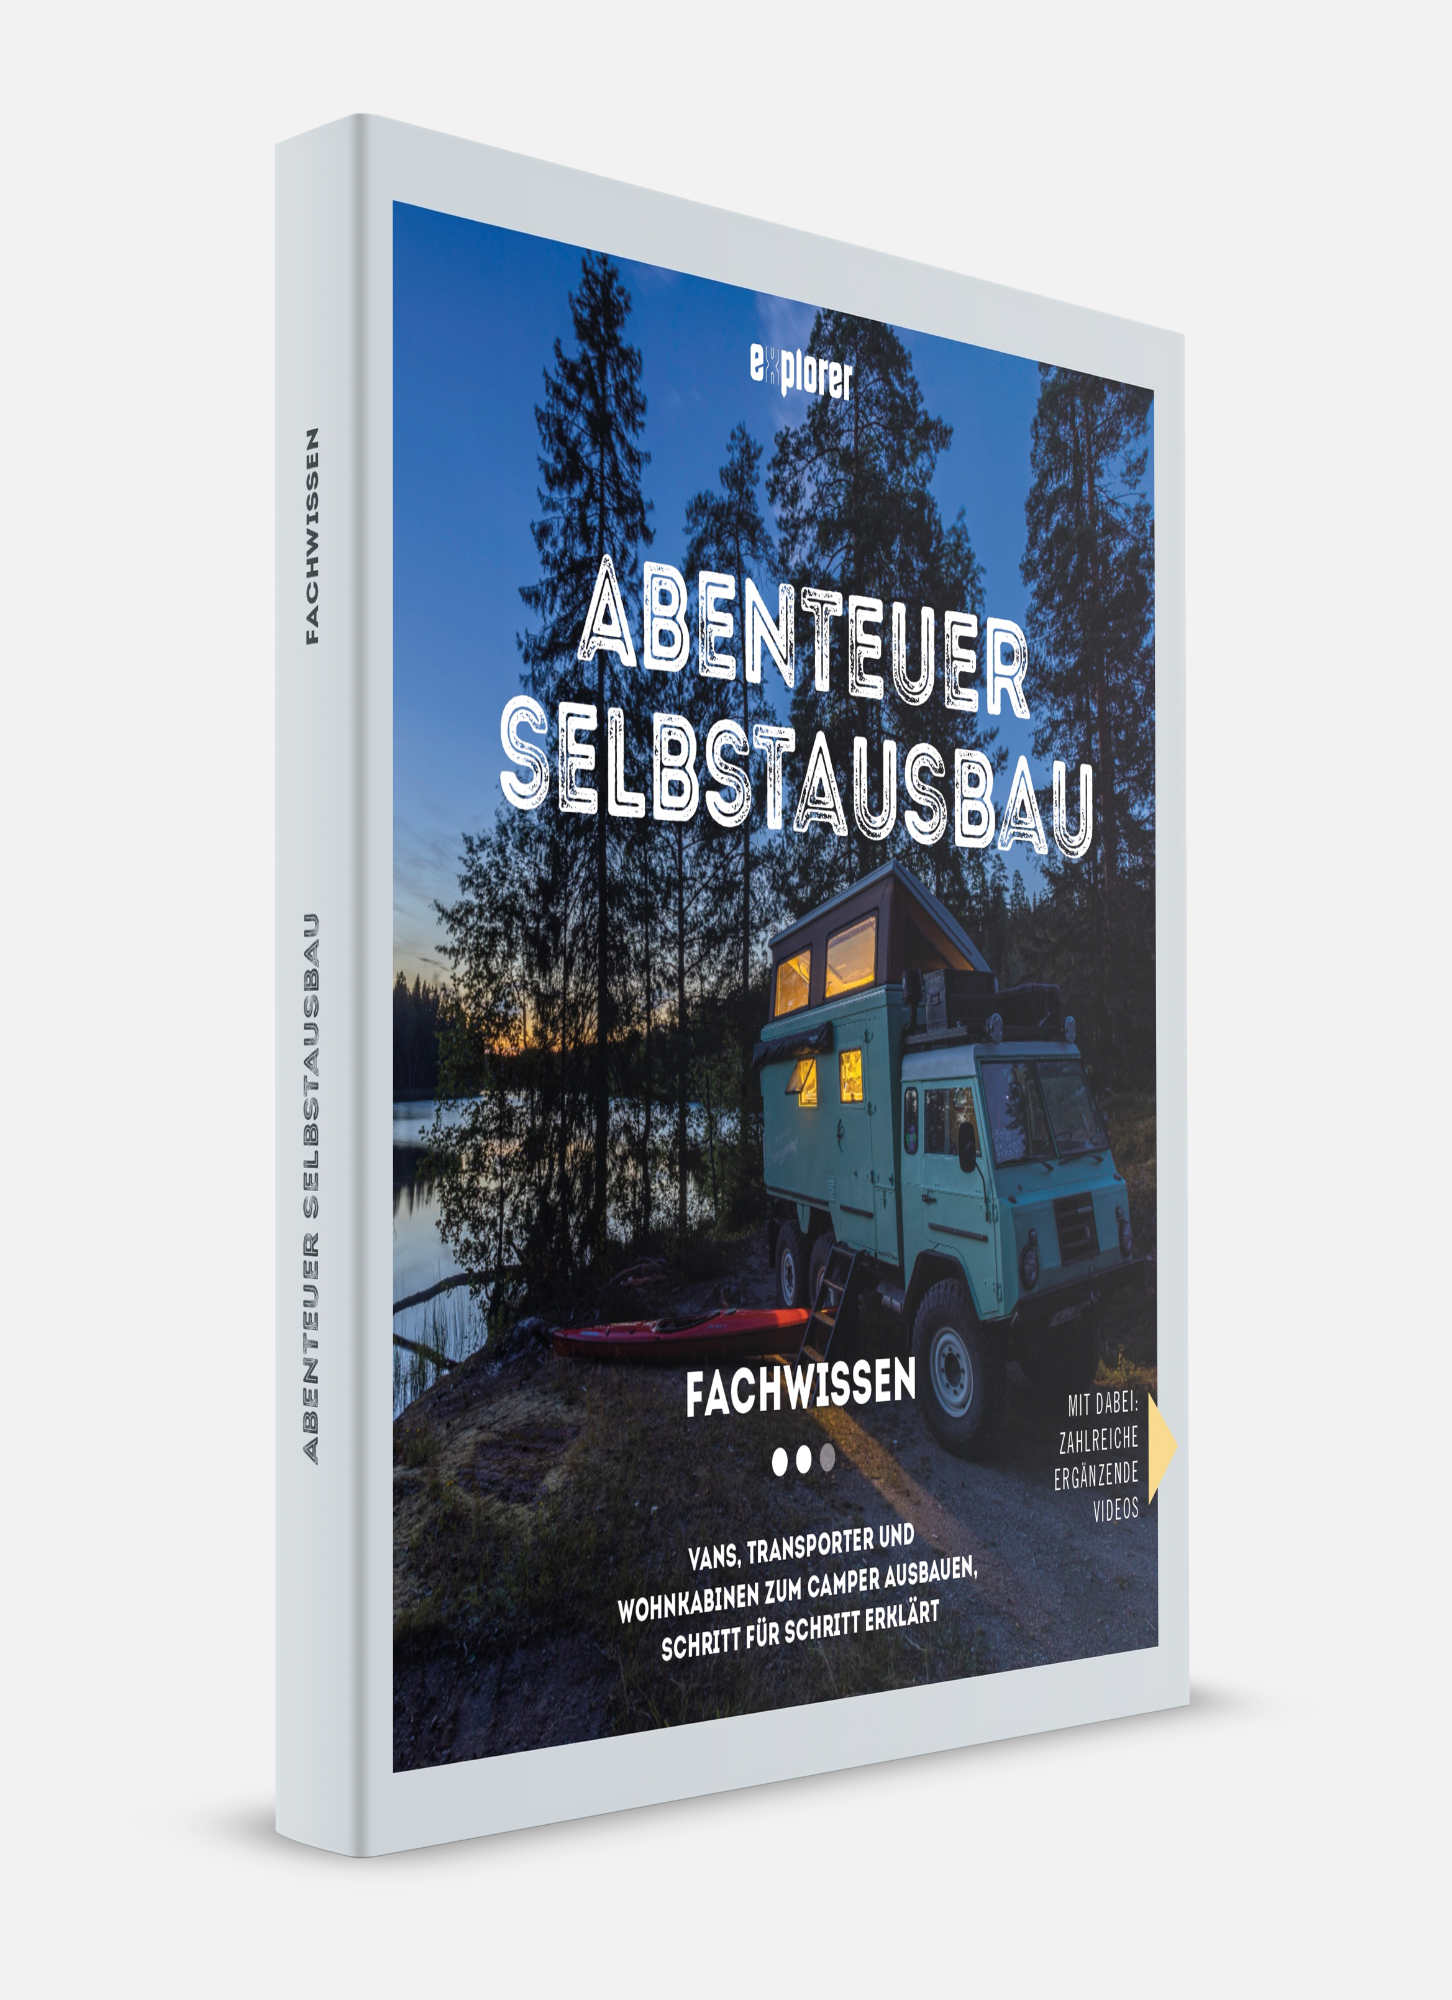 Abenteuer Selbstausbau: Fachwissen - explorer Magazin